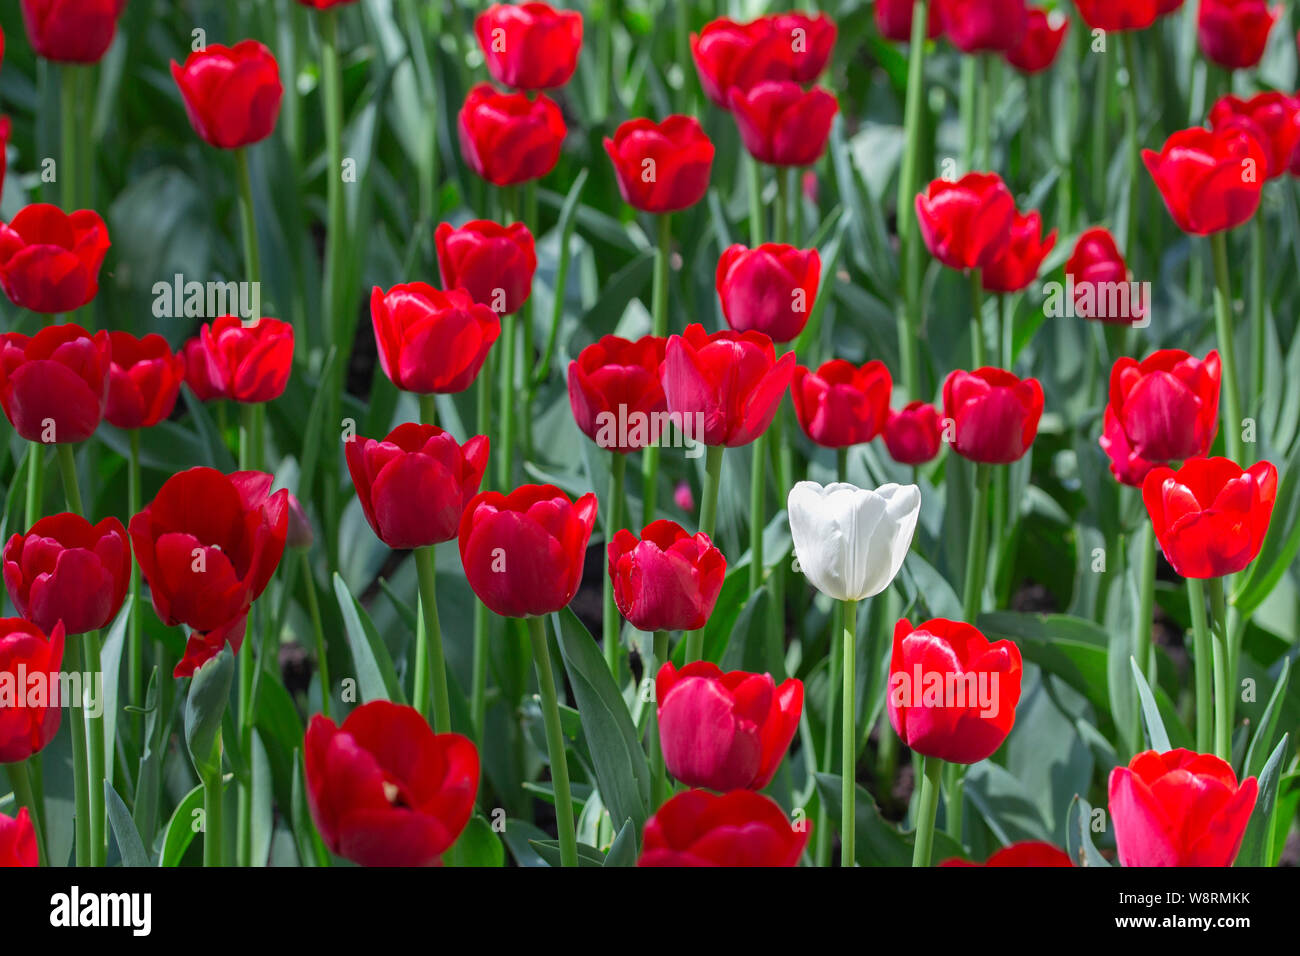 Une seule tulipe blanche dans une variété de tulipes rouges. Concept être  spéciaux, se démarquer de la foule et vous serez remarqué, être différents.  Corbeau blanc Photo Stock - Alamy